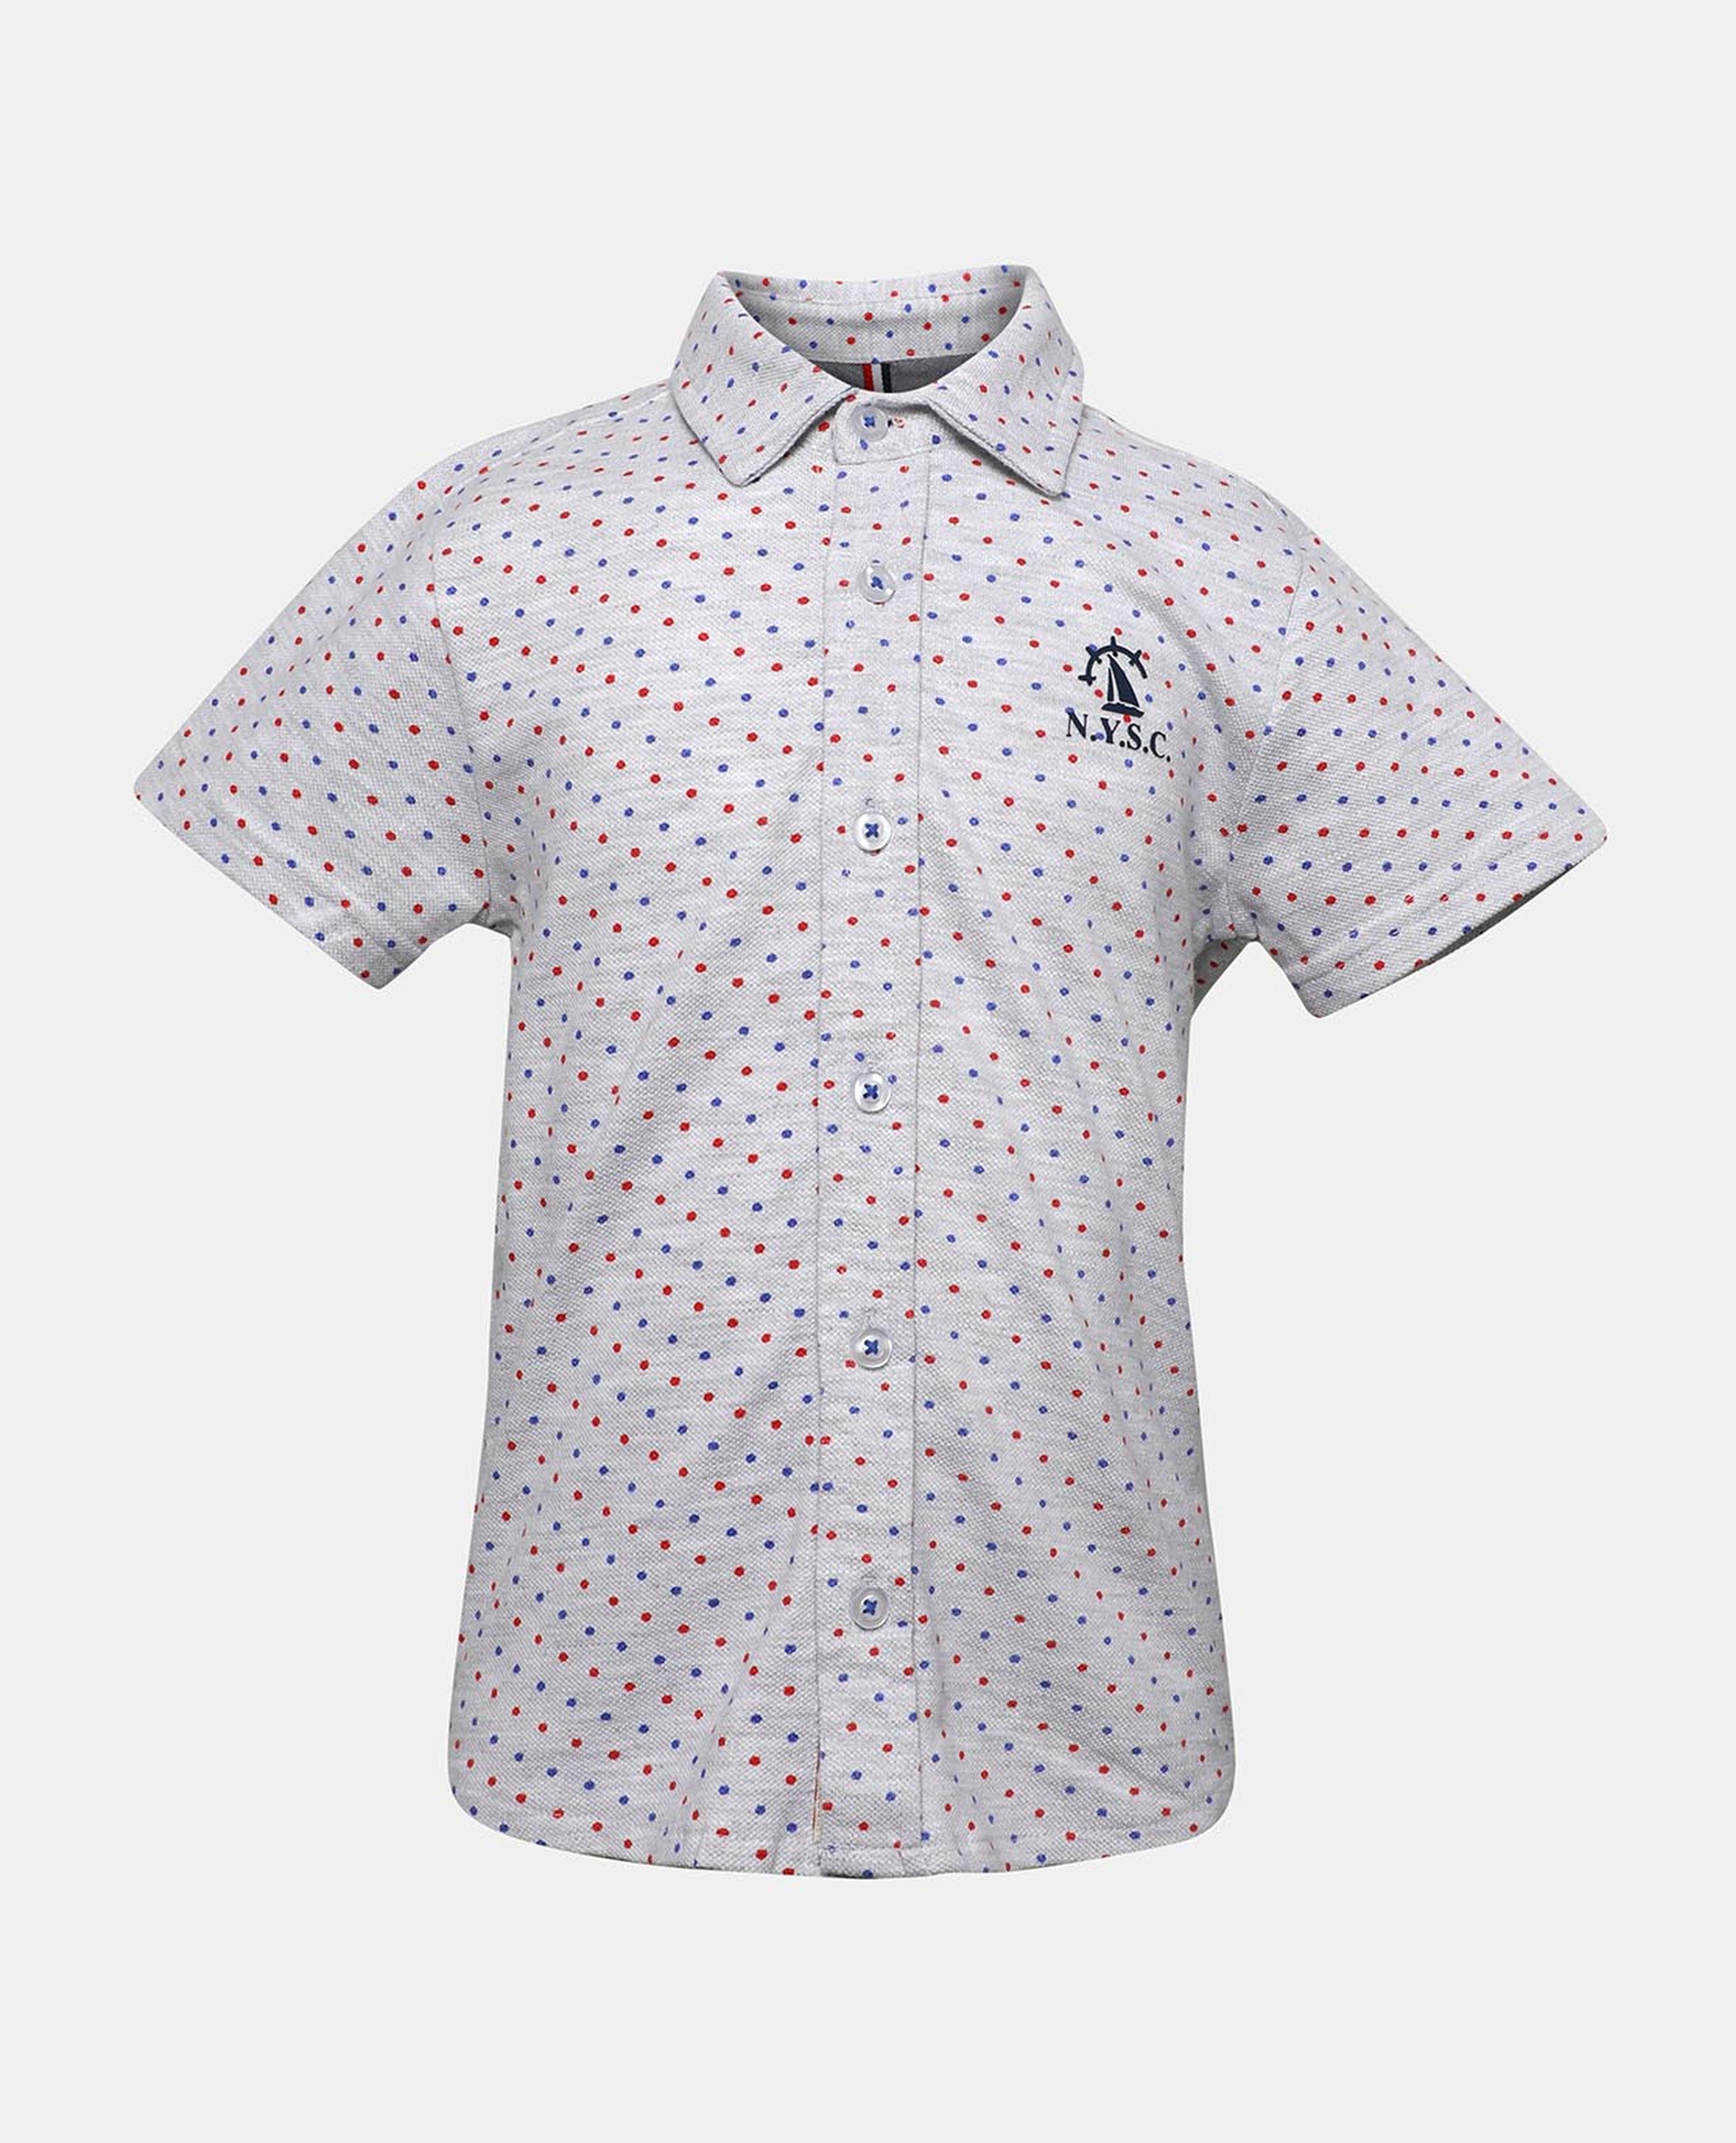 Grey Polka Dot Printed Shirt